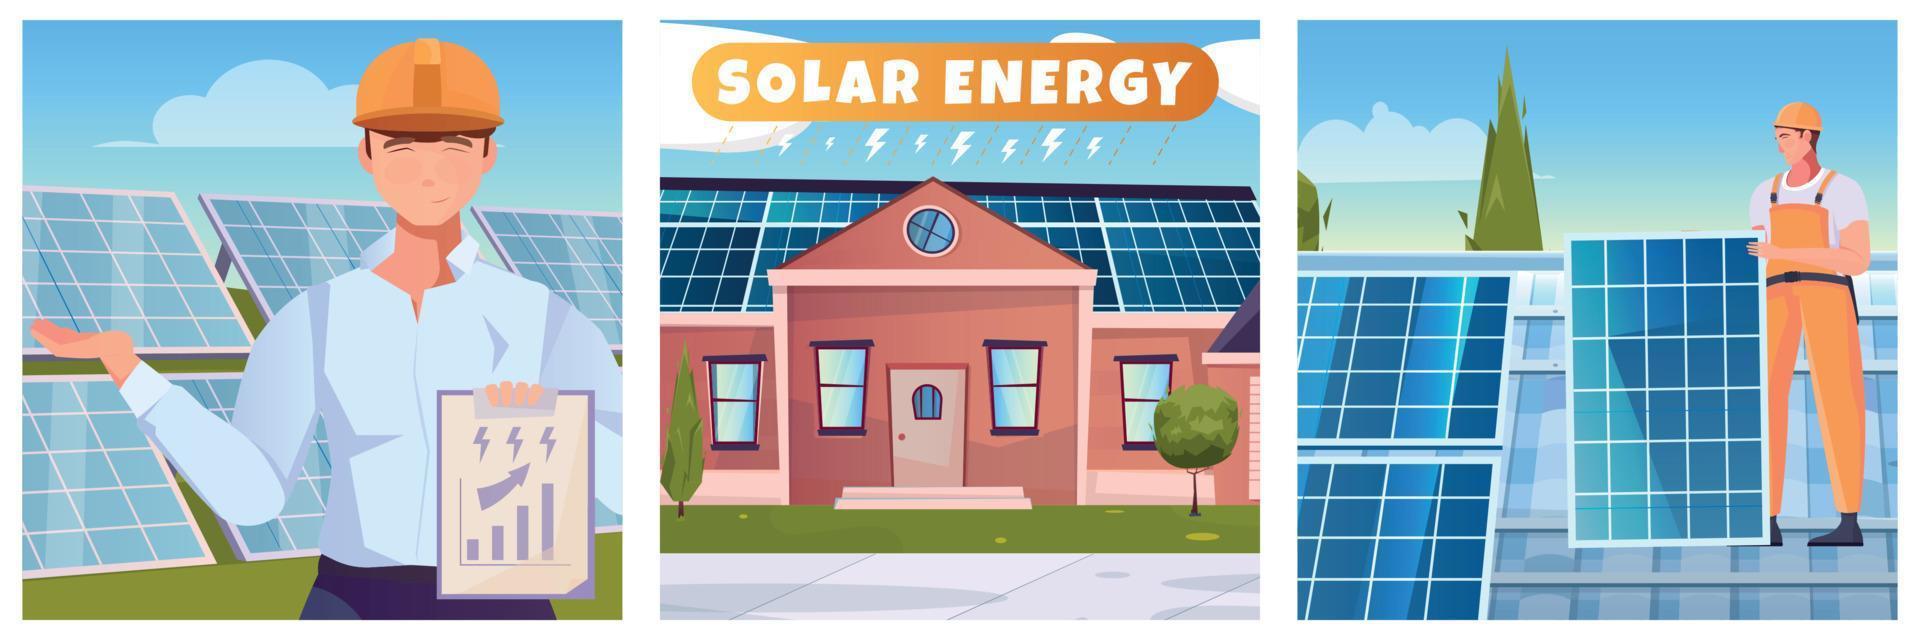 illustrazioni piatte di energia solare vettore